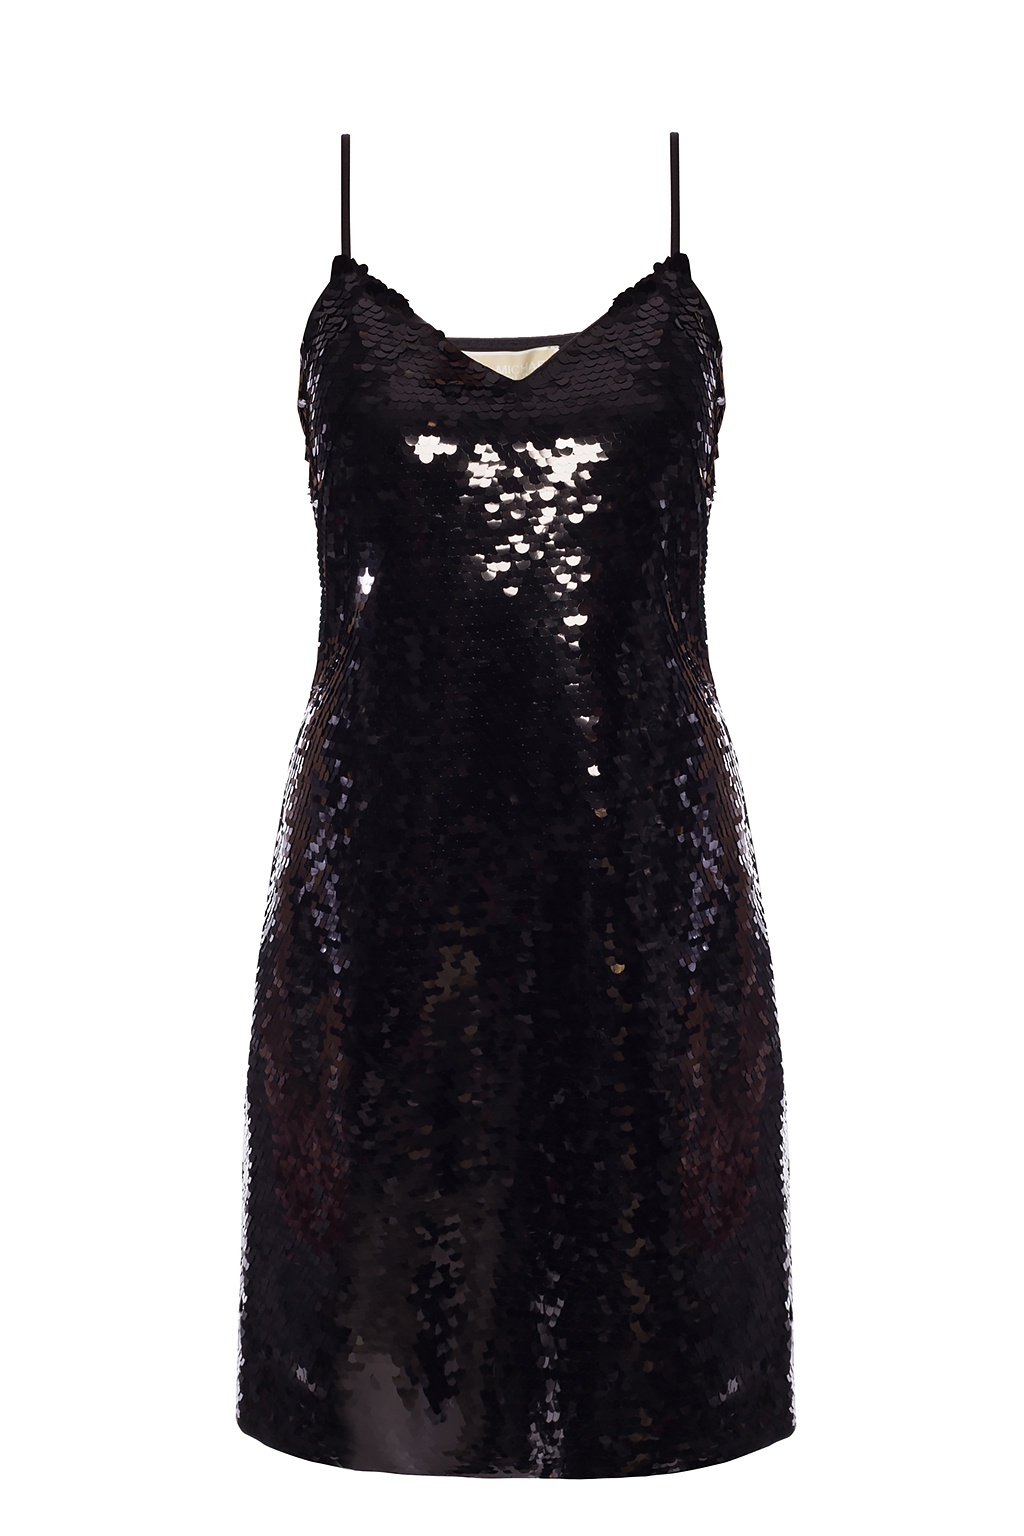 Michael Kors Cekinowa sukienka czarny-srebrny Wz\u00f3r w paski W stylu casual Moda Sukienki Sukienki z cekinami 